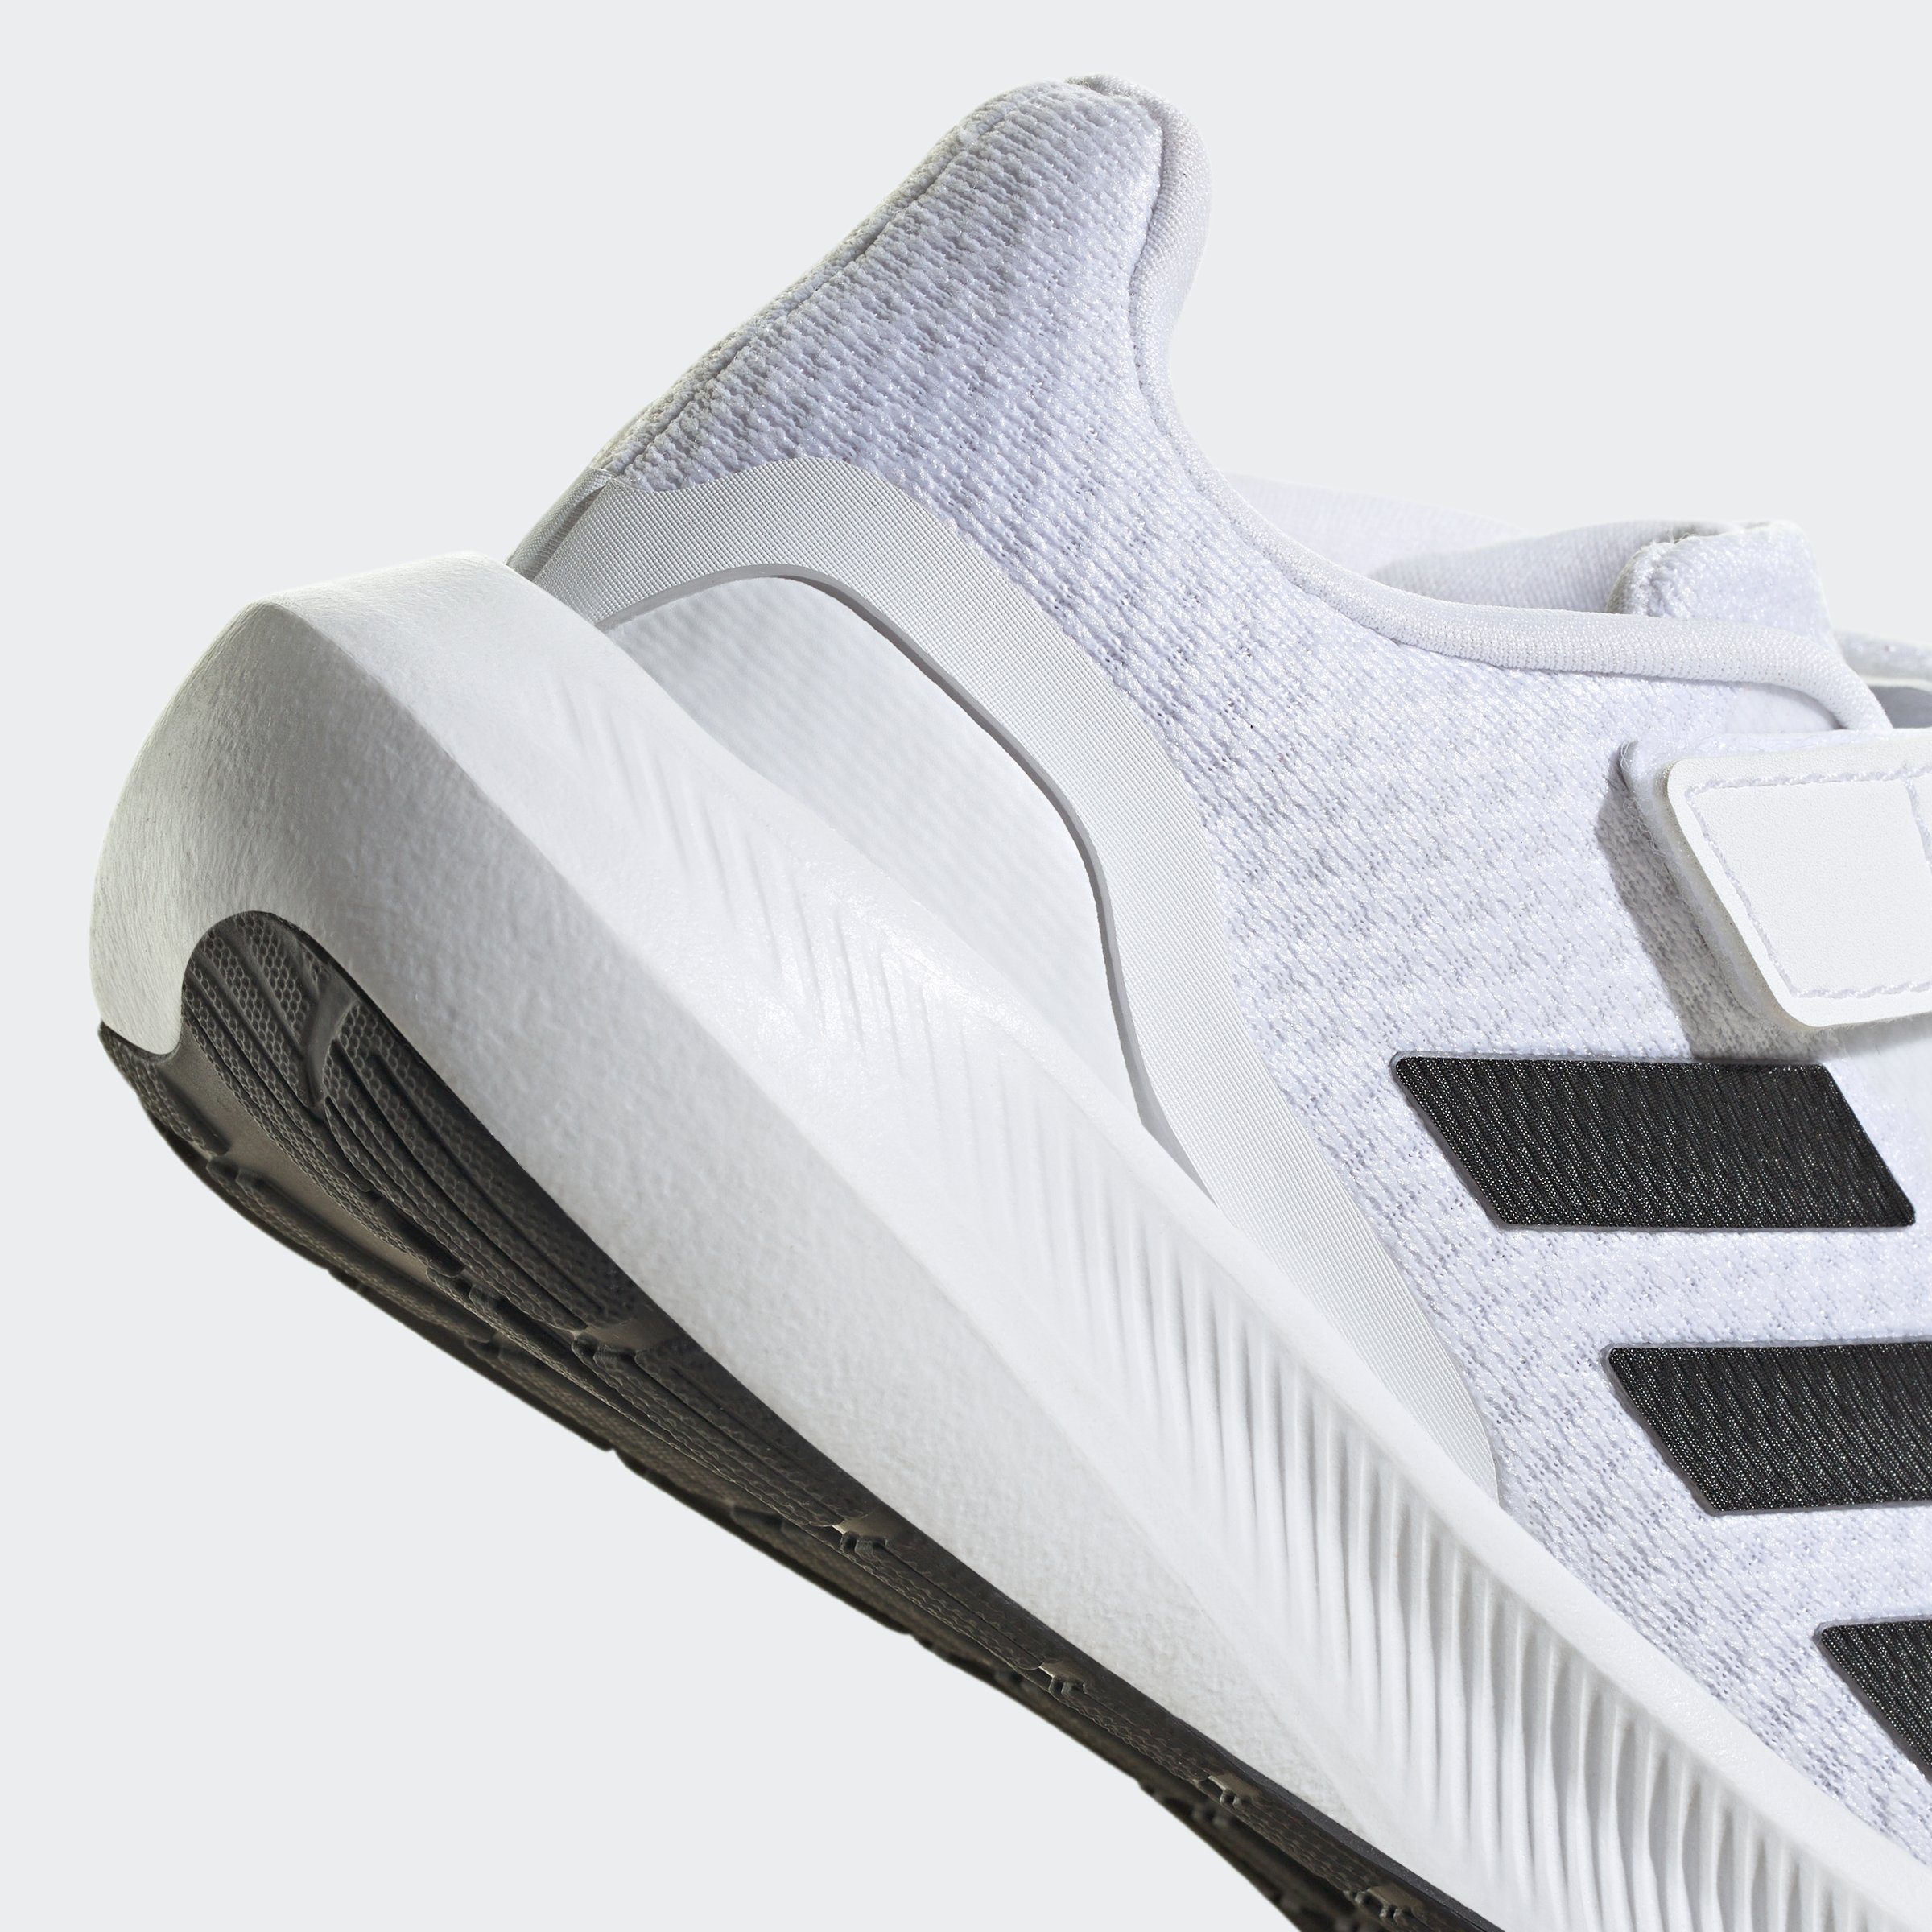 STRAP Sportswear Sneaker adidas 3.0 ftwwht TOP ELASTIC LACE RUNFALCON